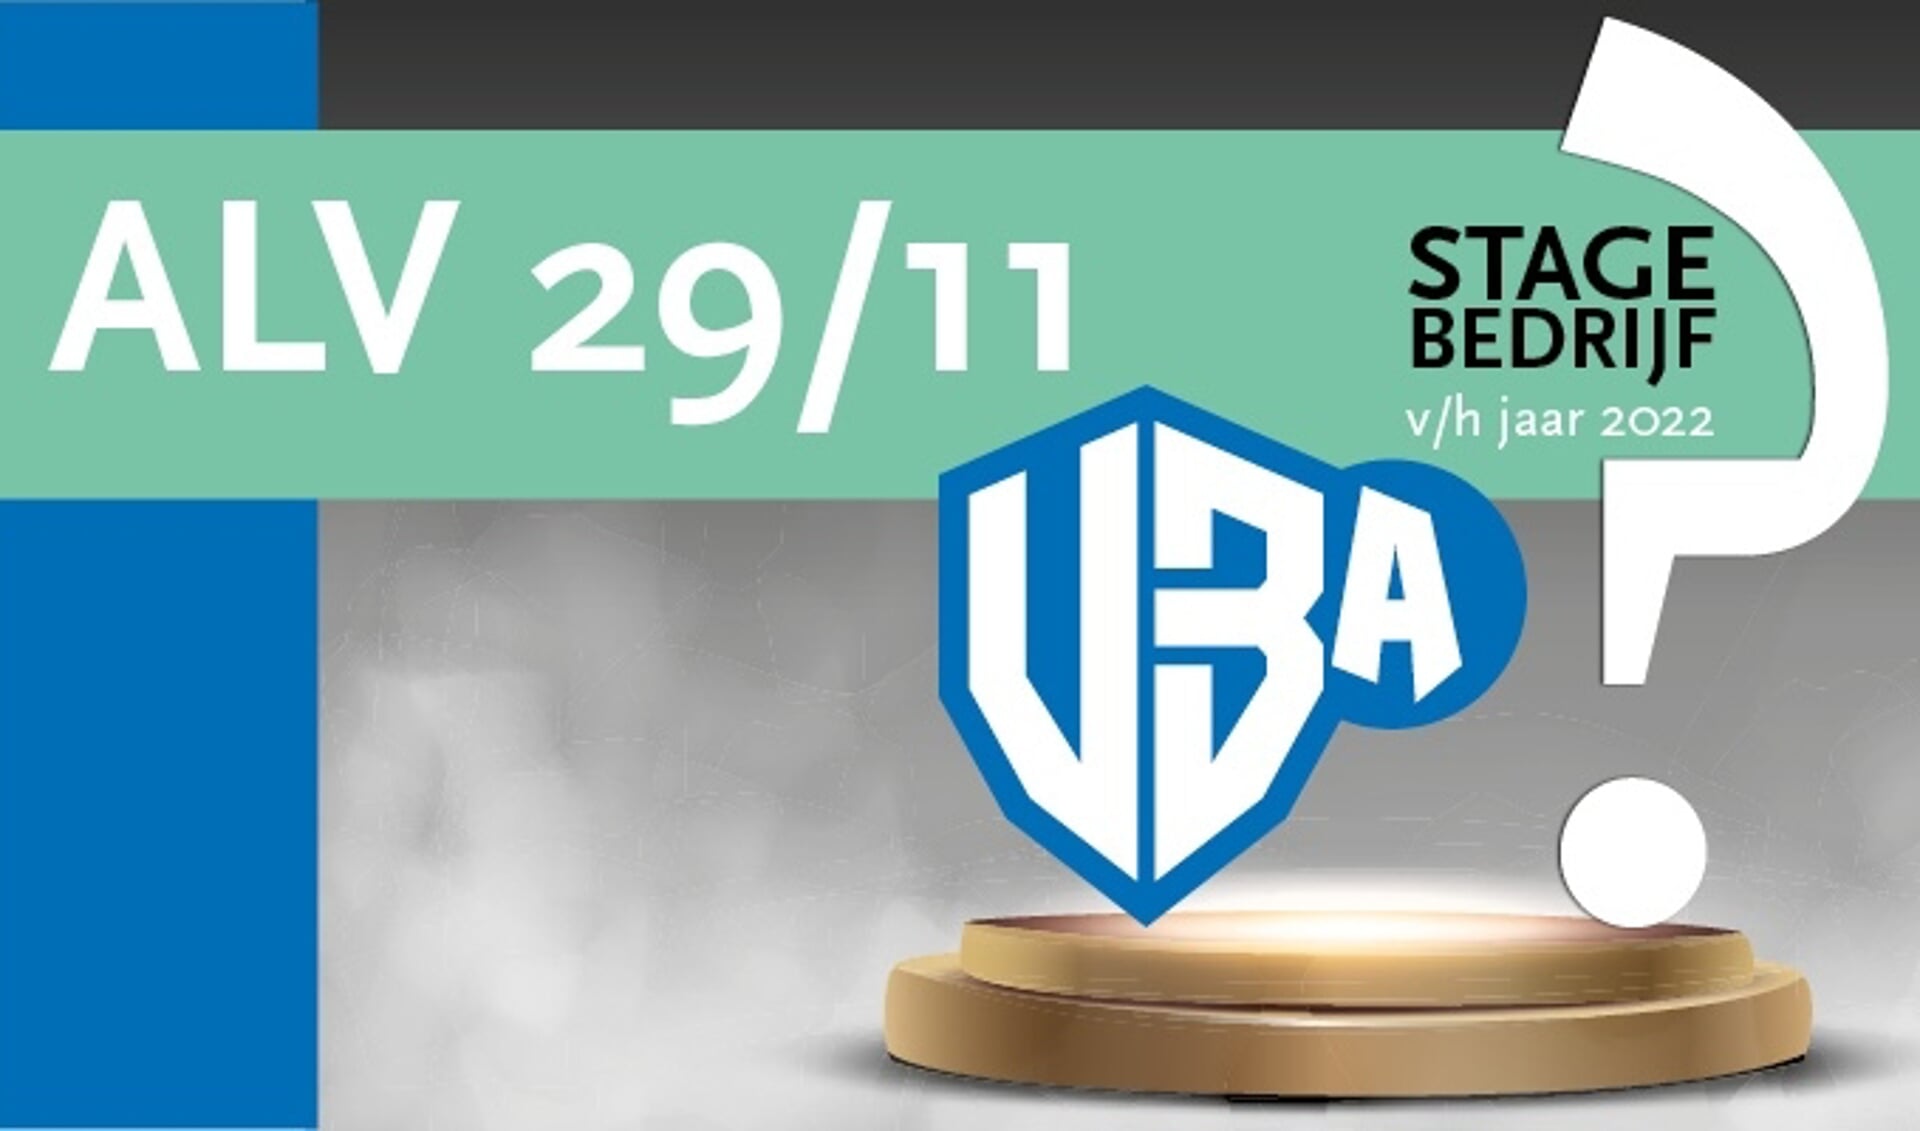 Op 29 november reikt de VBA de prijs uit voor het Stagebedrijf van 2022. (Foto: VBA)